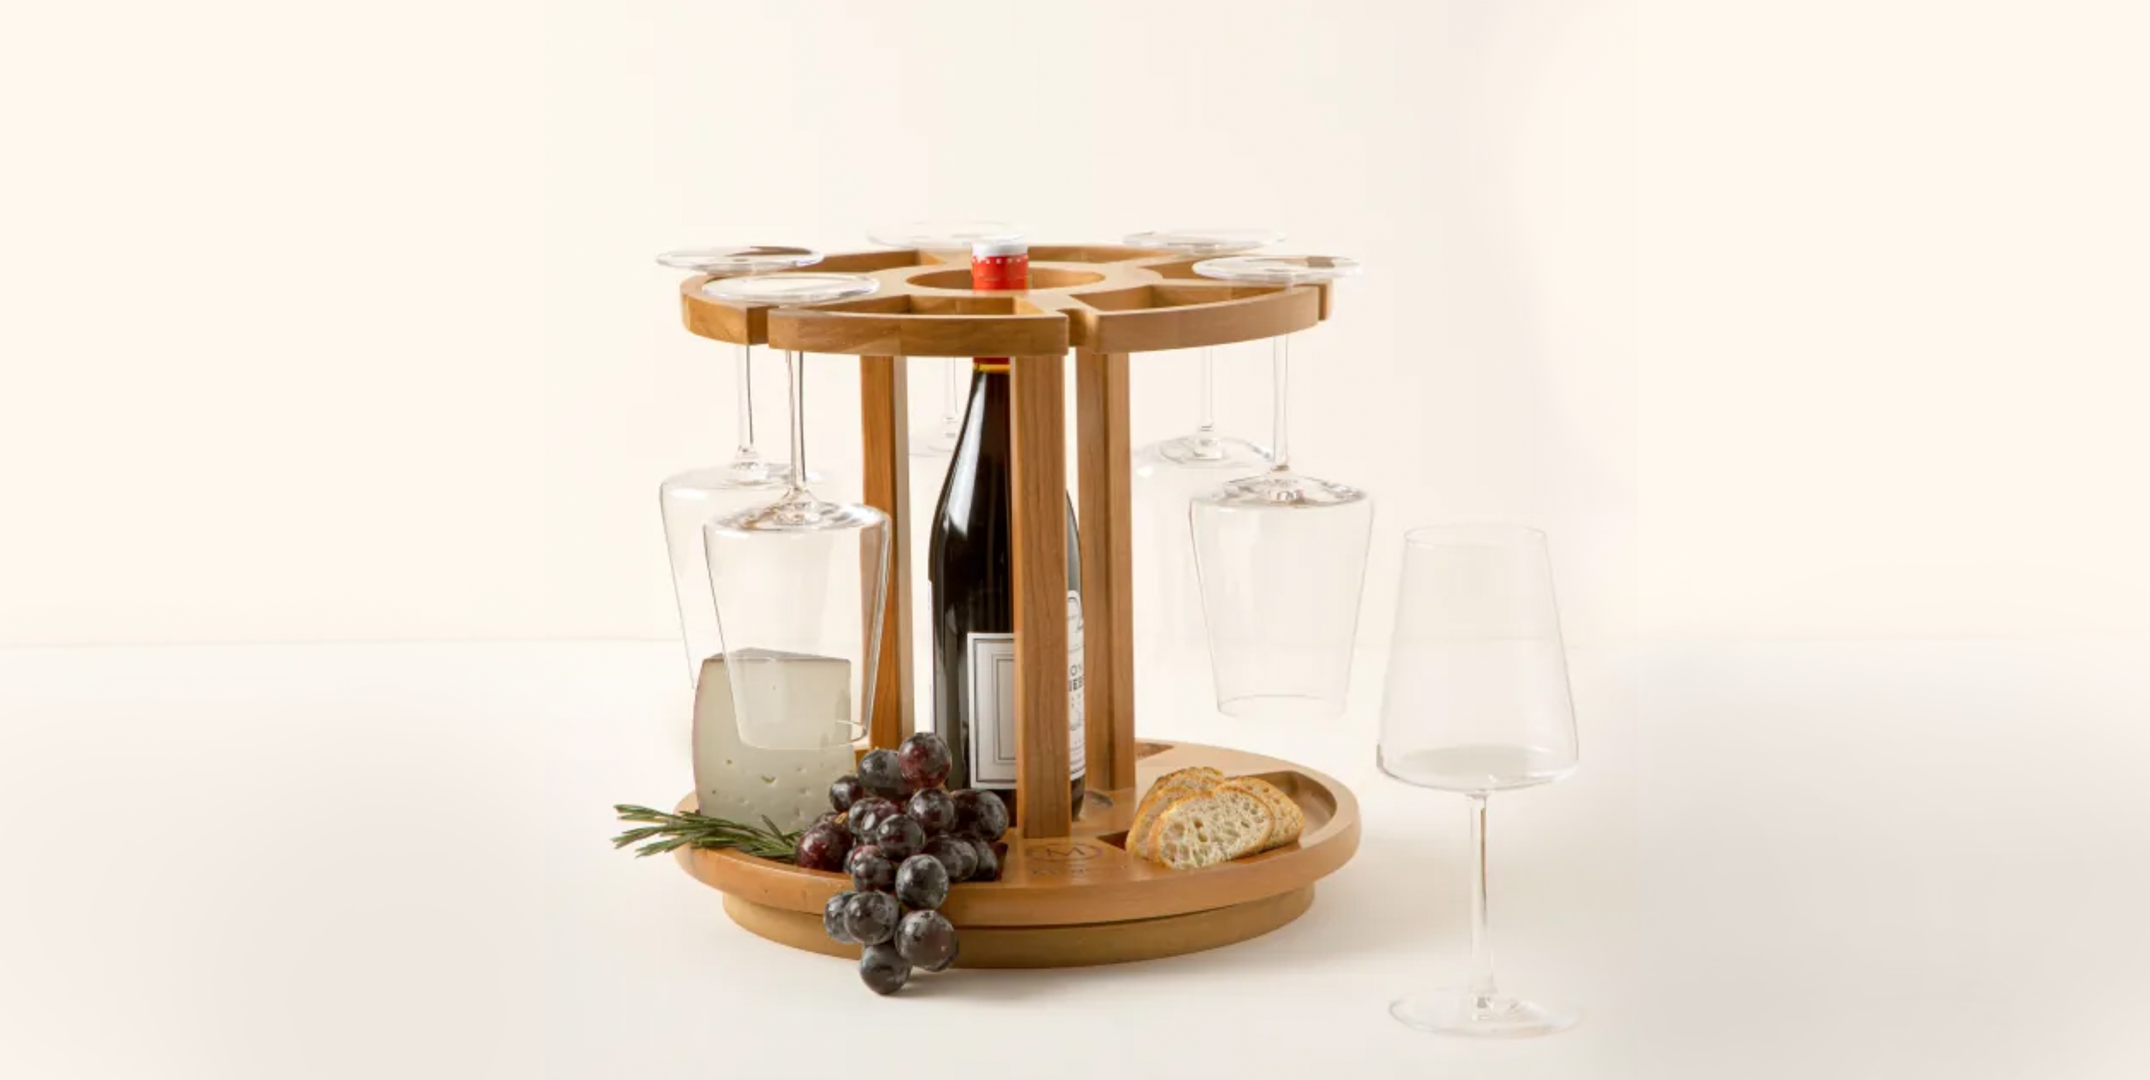 DIY Wine Glass Bamboo Gift